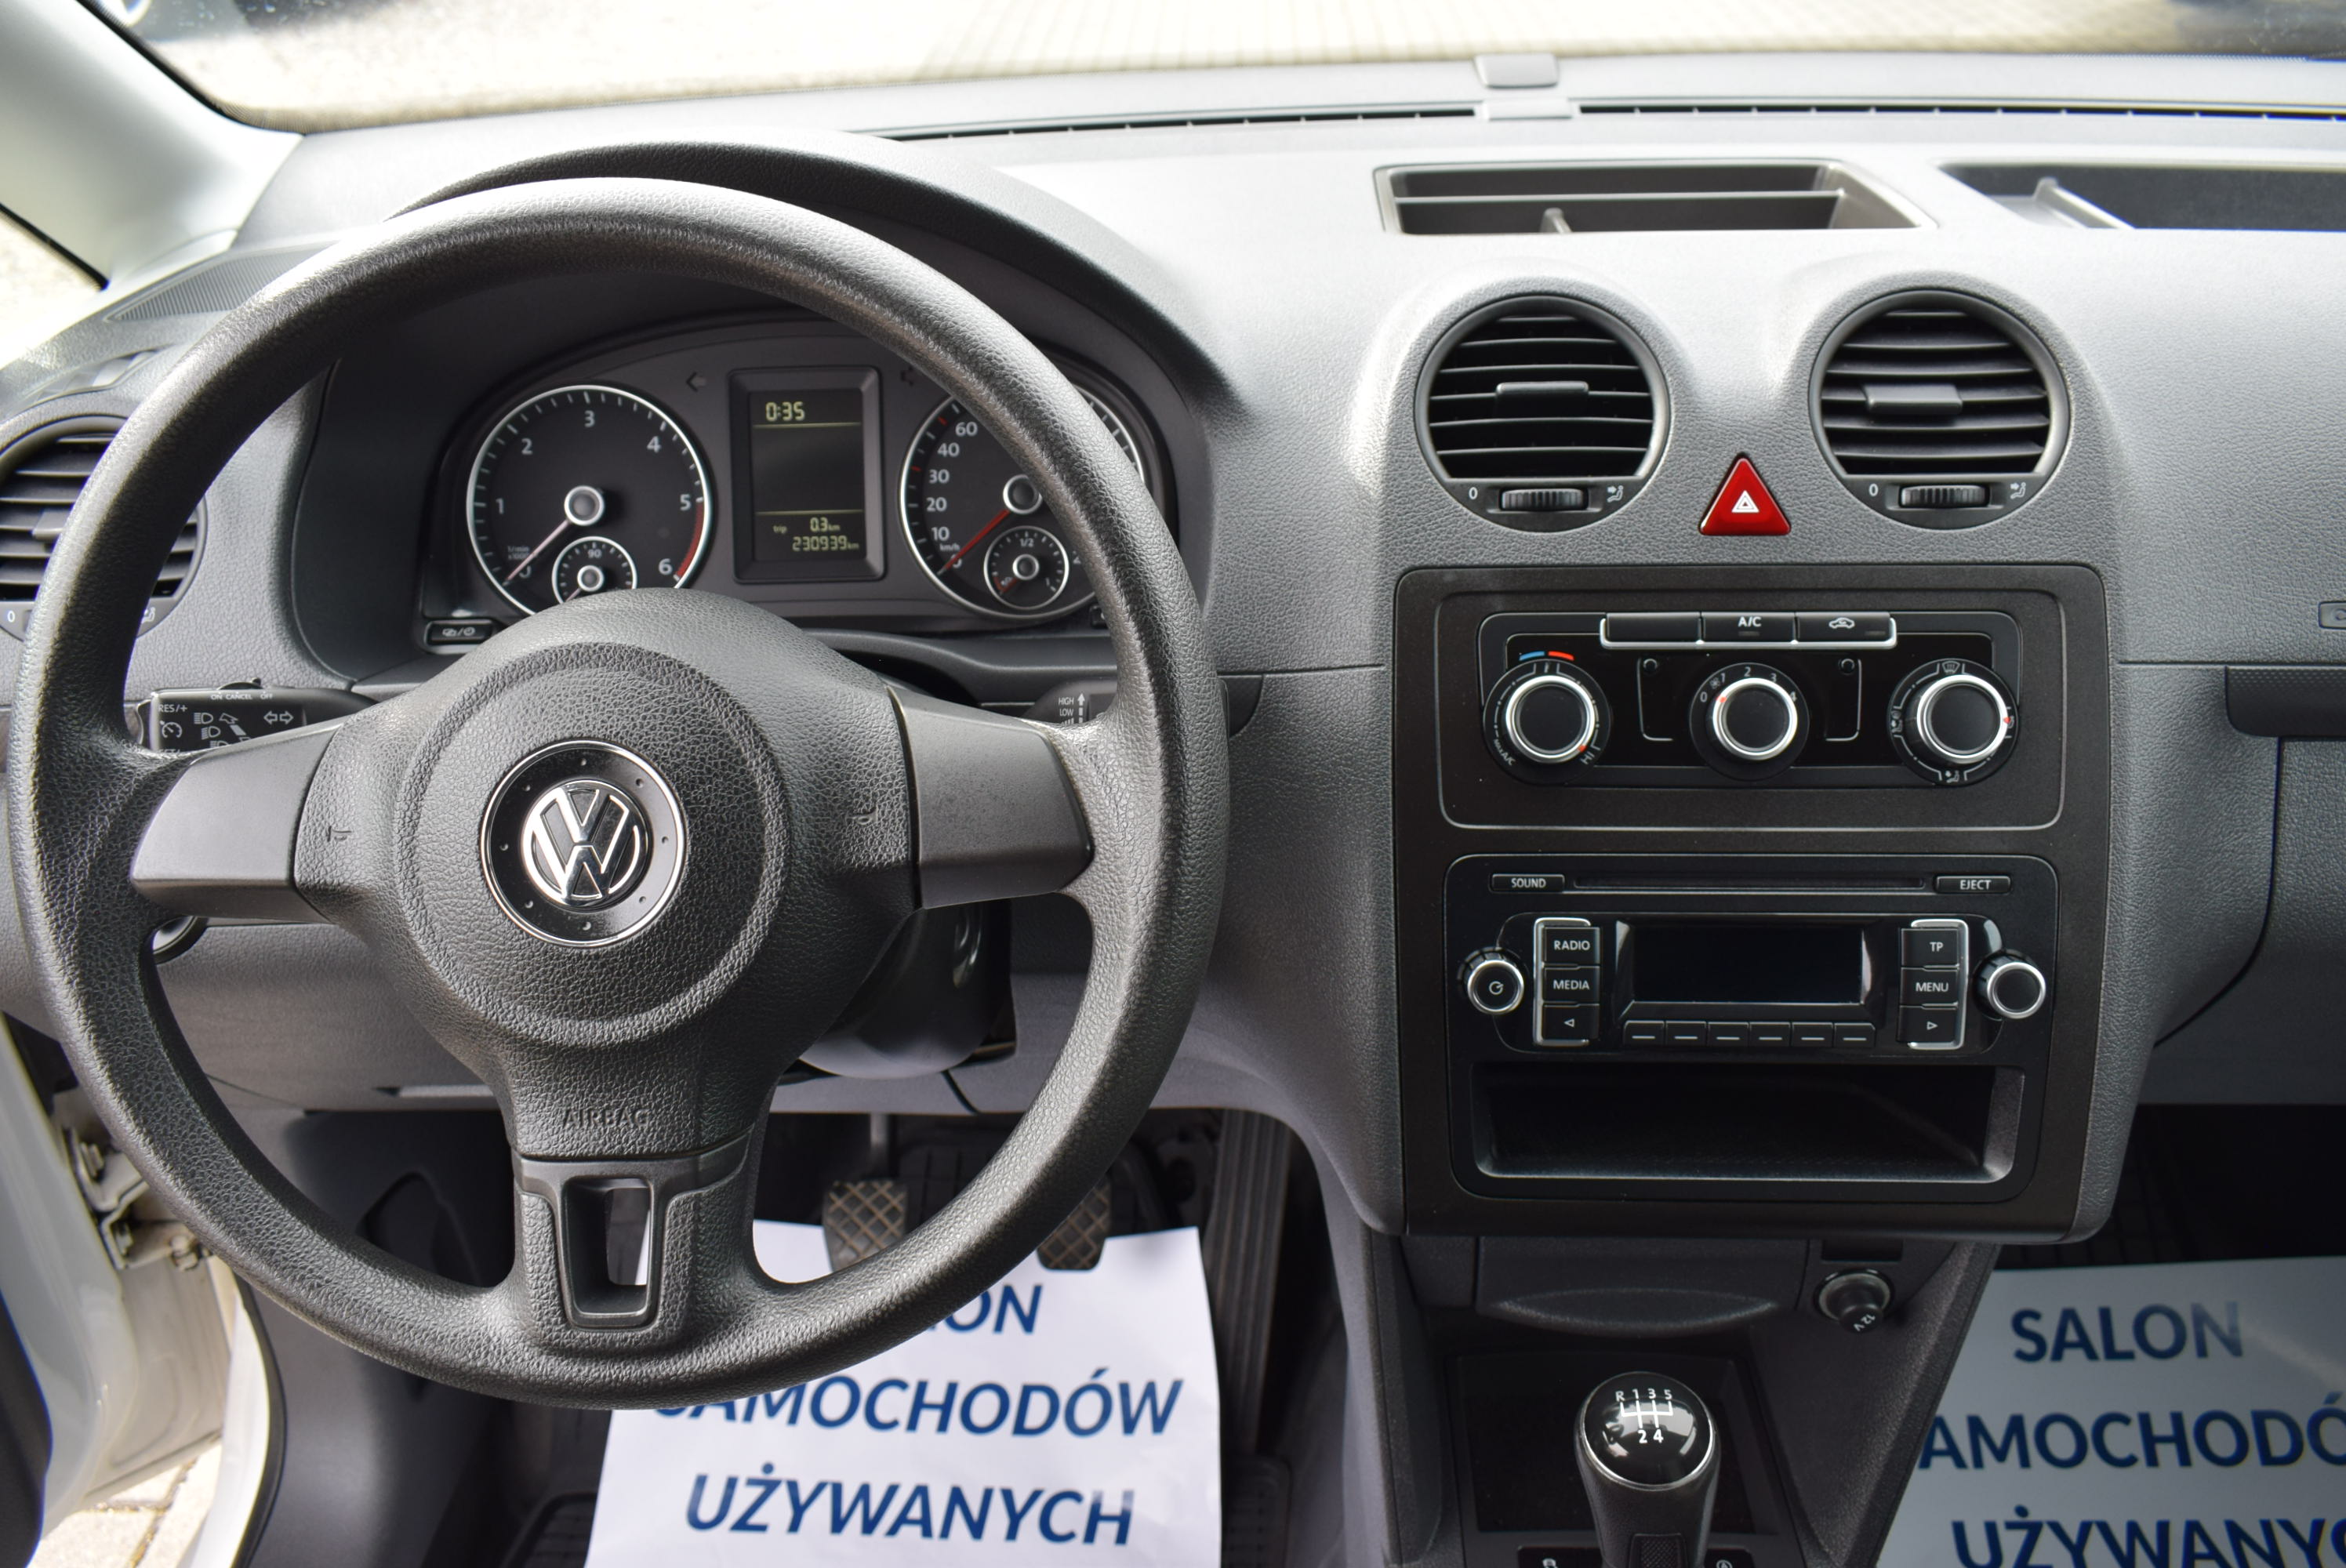 VW Caddy 1.6 TDI, Nowy Model, Zabudowa warsztatowa, serwisowa, Motylkowe drzwi, Klima, Rok Gwarancji full